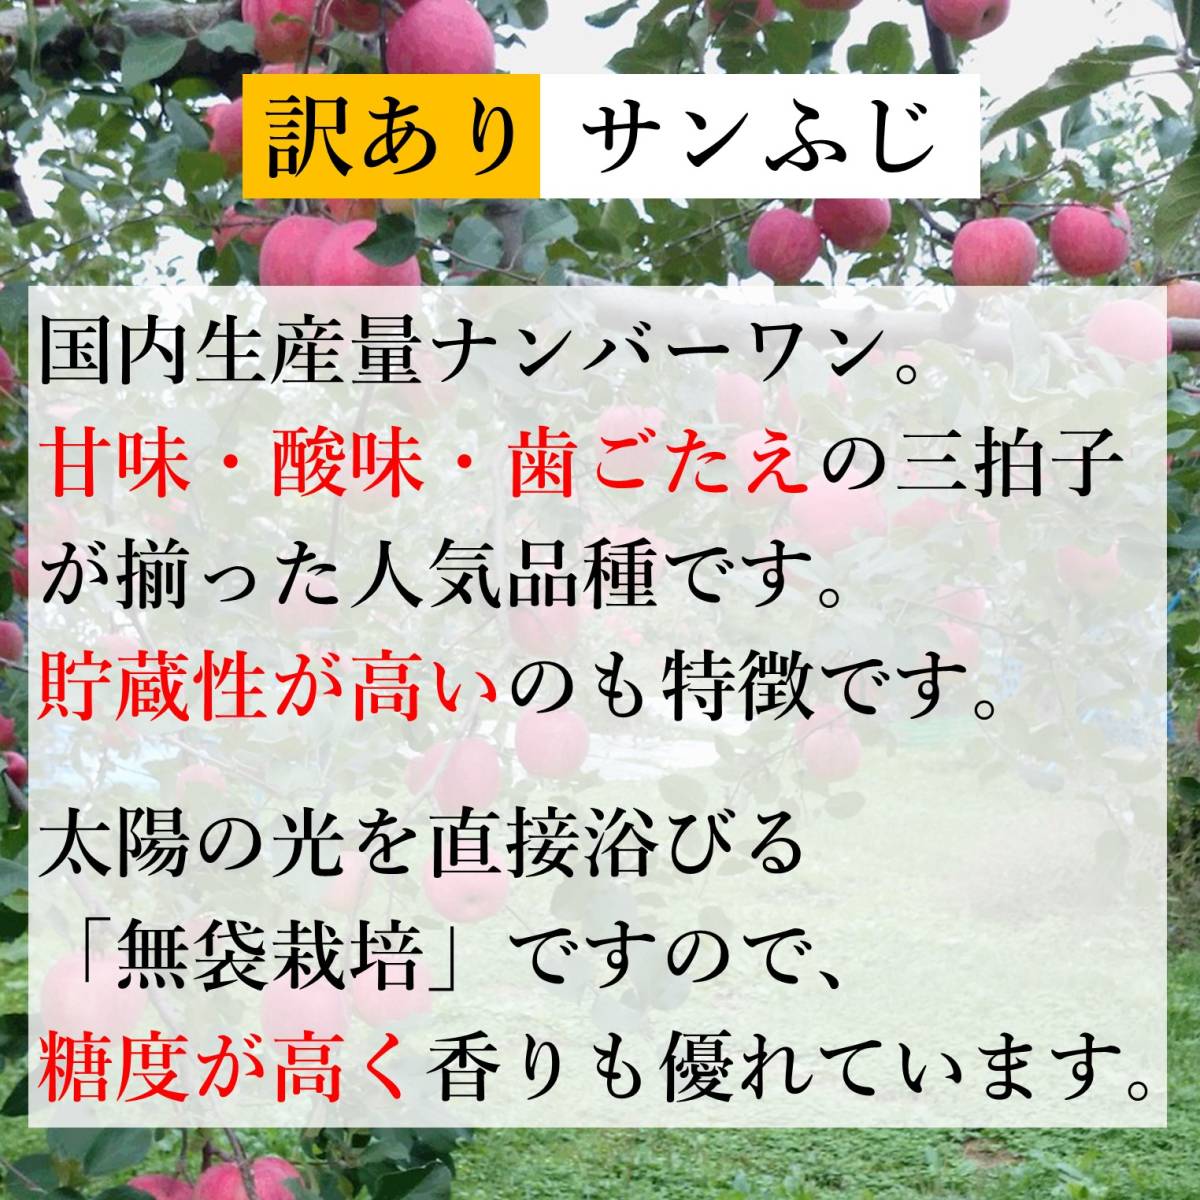 【青森県産】家庭用 訳あり りんご 5kg箱 サンふじ_画像6